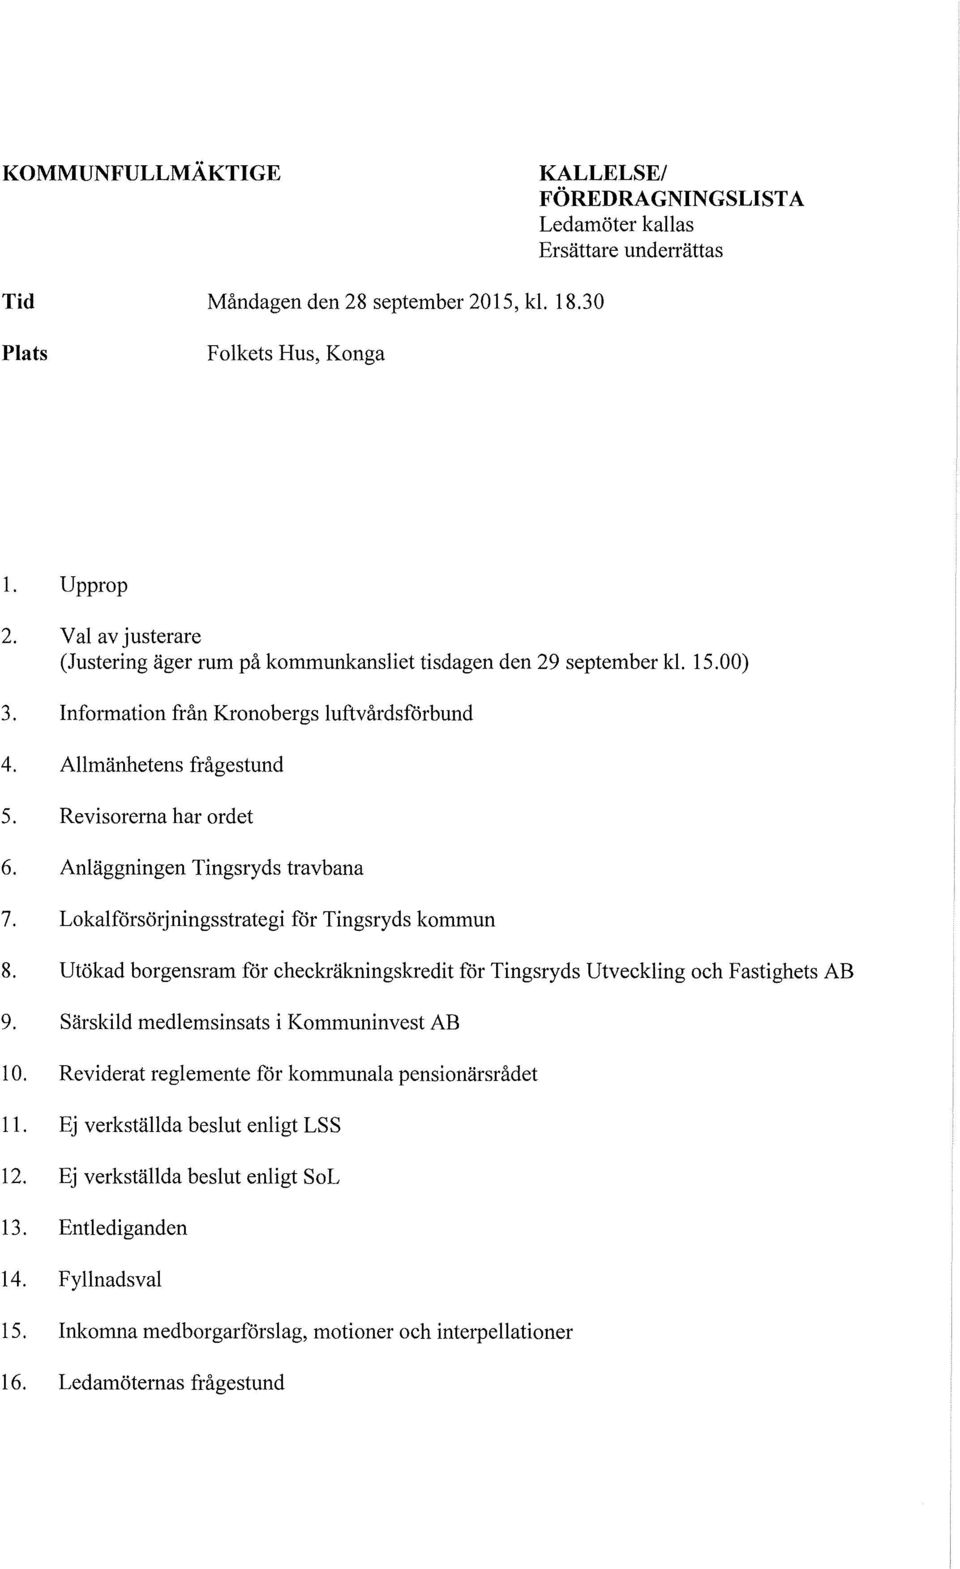 Anläggningen Tingsryds travbana 7. Lokalförsörjningsstrategi for Tingsryds kommun 8. Utökad borgensram for checkräkningskredit for Tingsryds Utveckling och Fastighets AB 9.